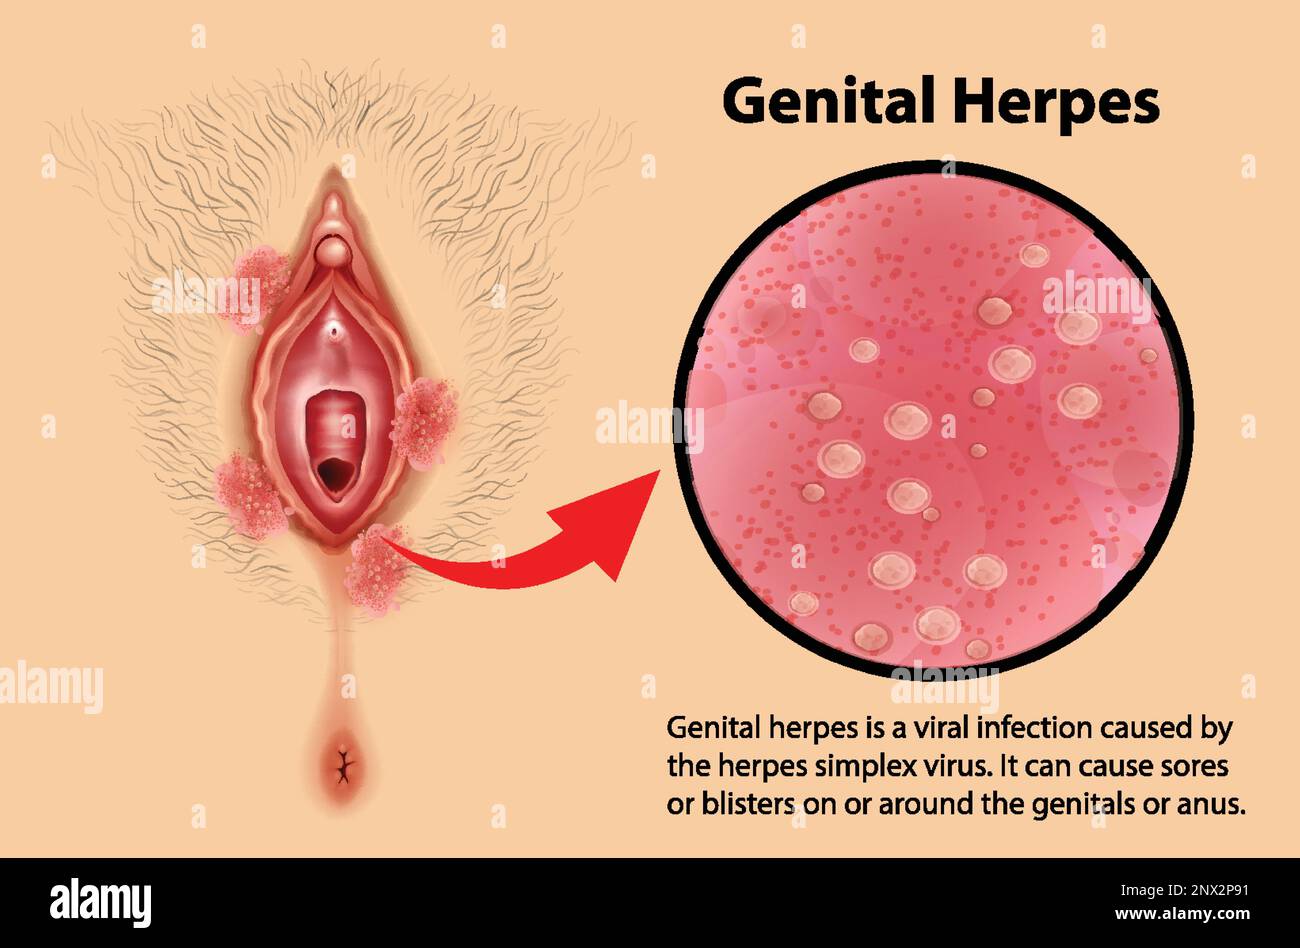 Infographie sur les herpès génital avec illustration explicative ...